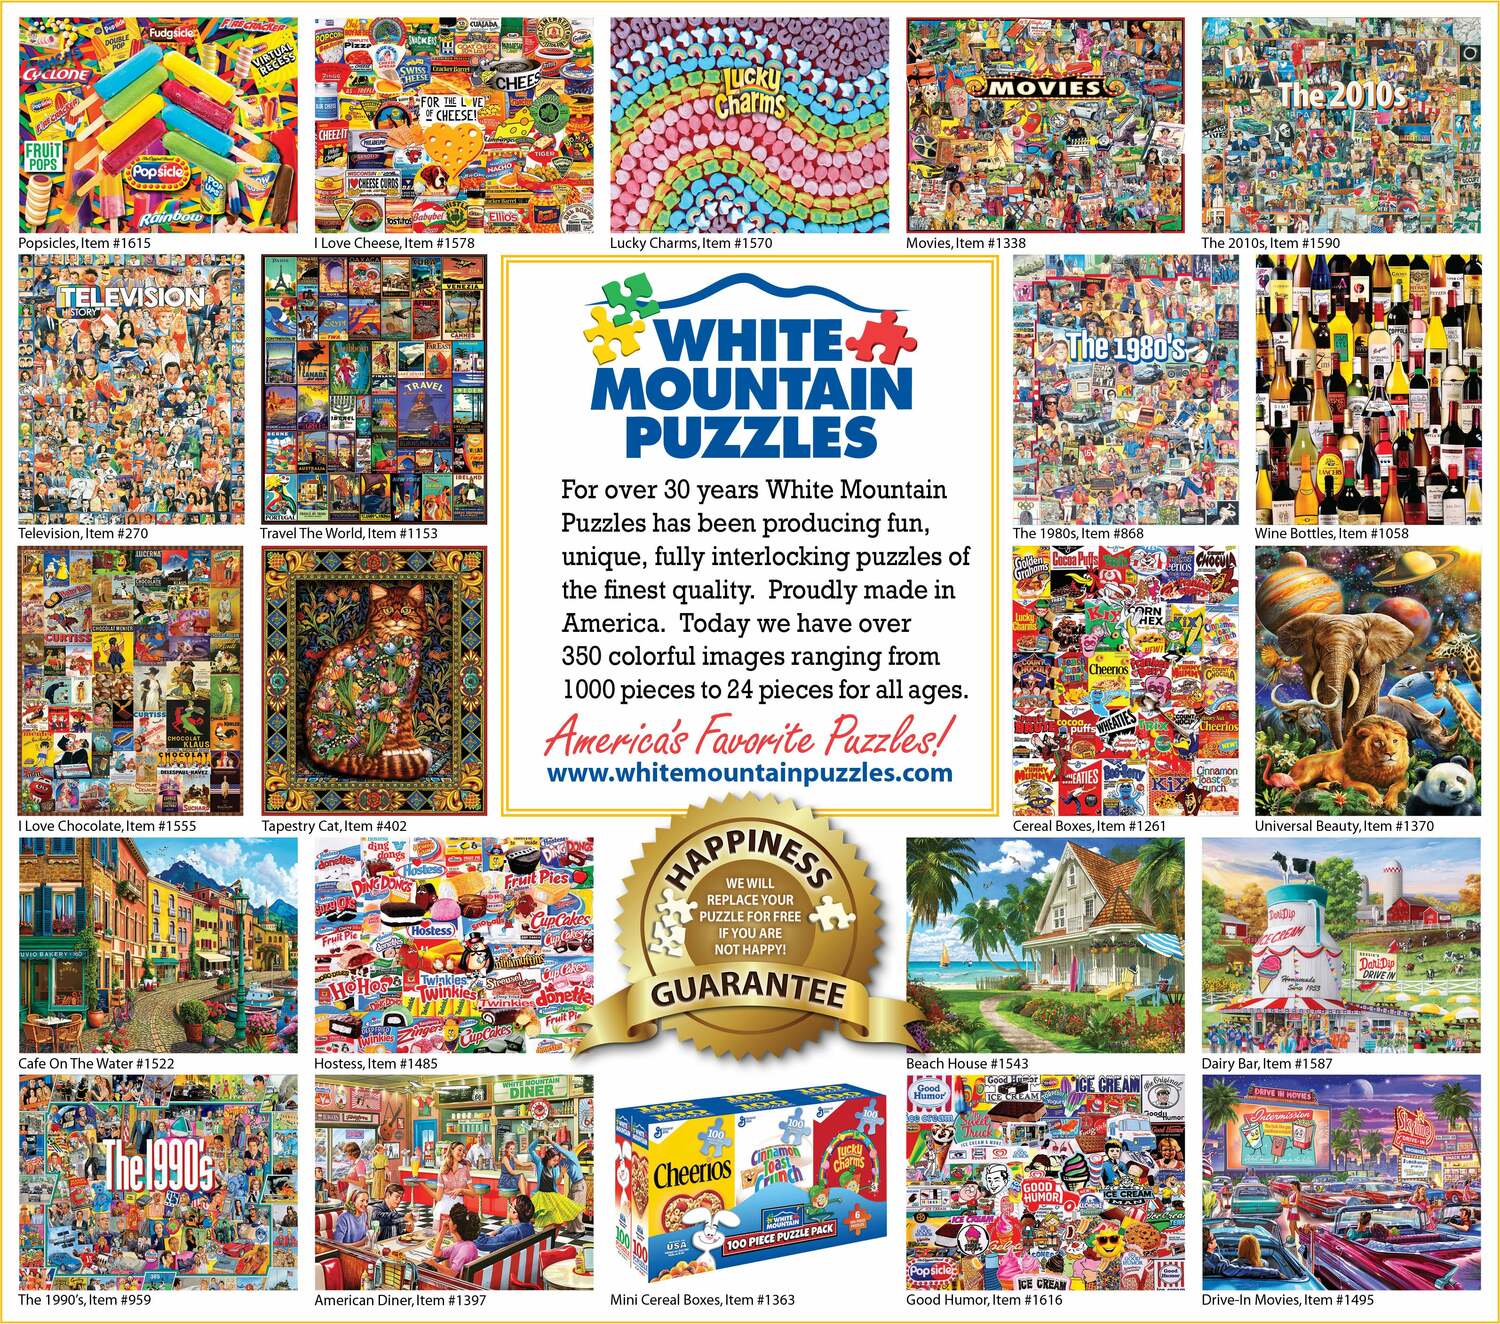 Movie Snacks - 1000 Piece Jigsaw Puzzle